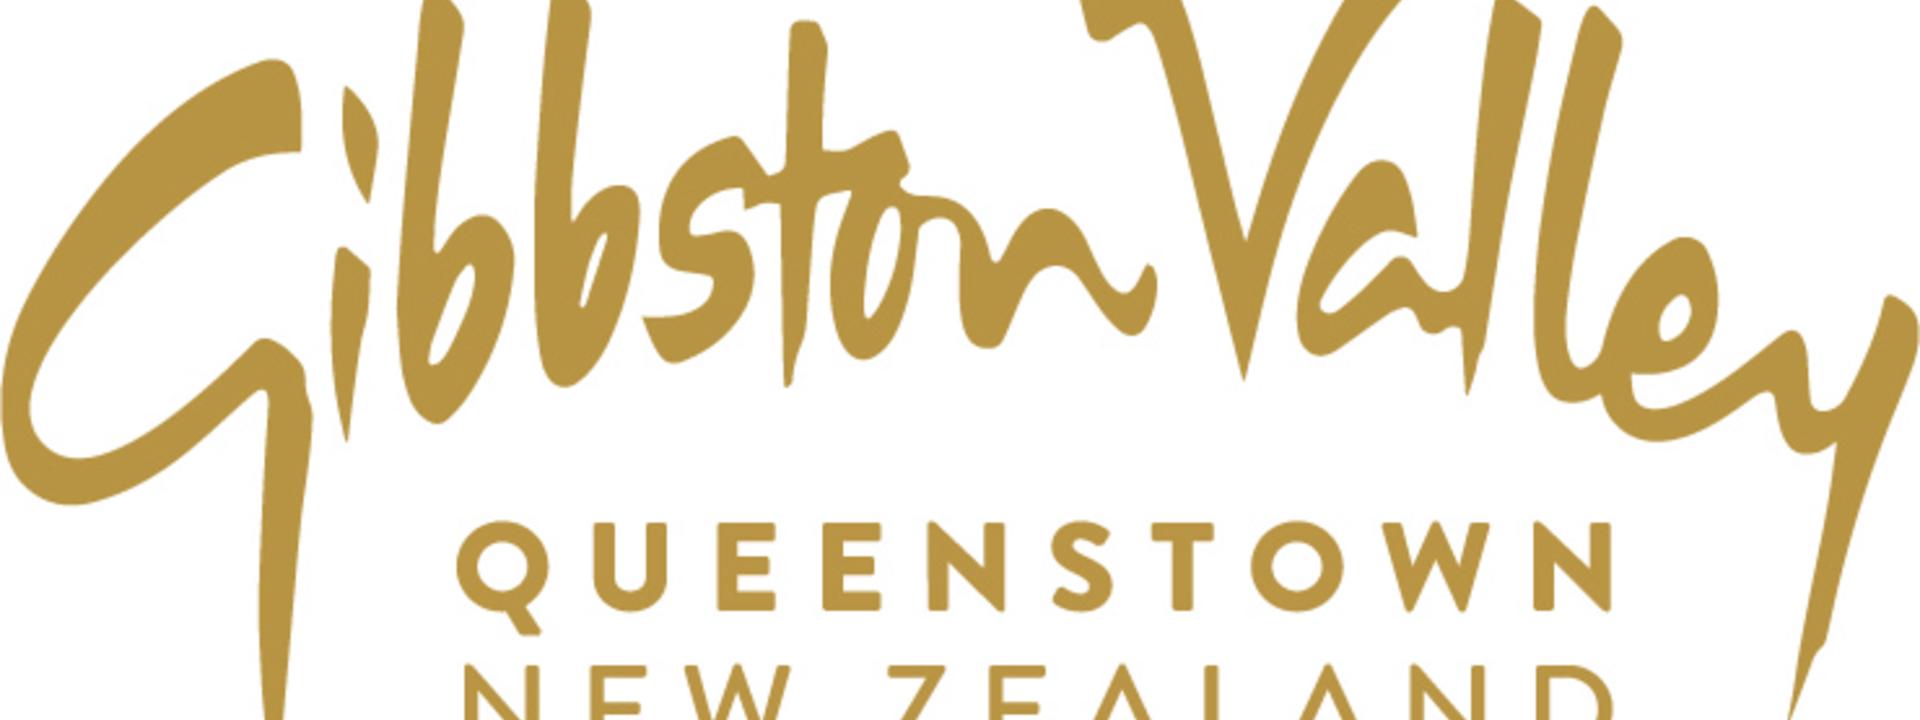 Queenstown New Zealand logo.jpg